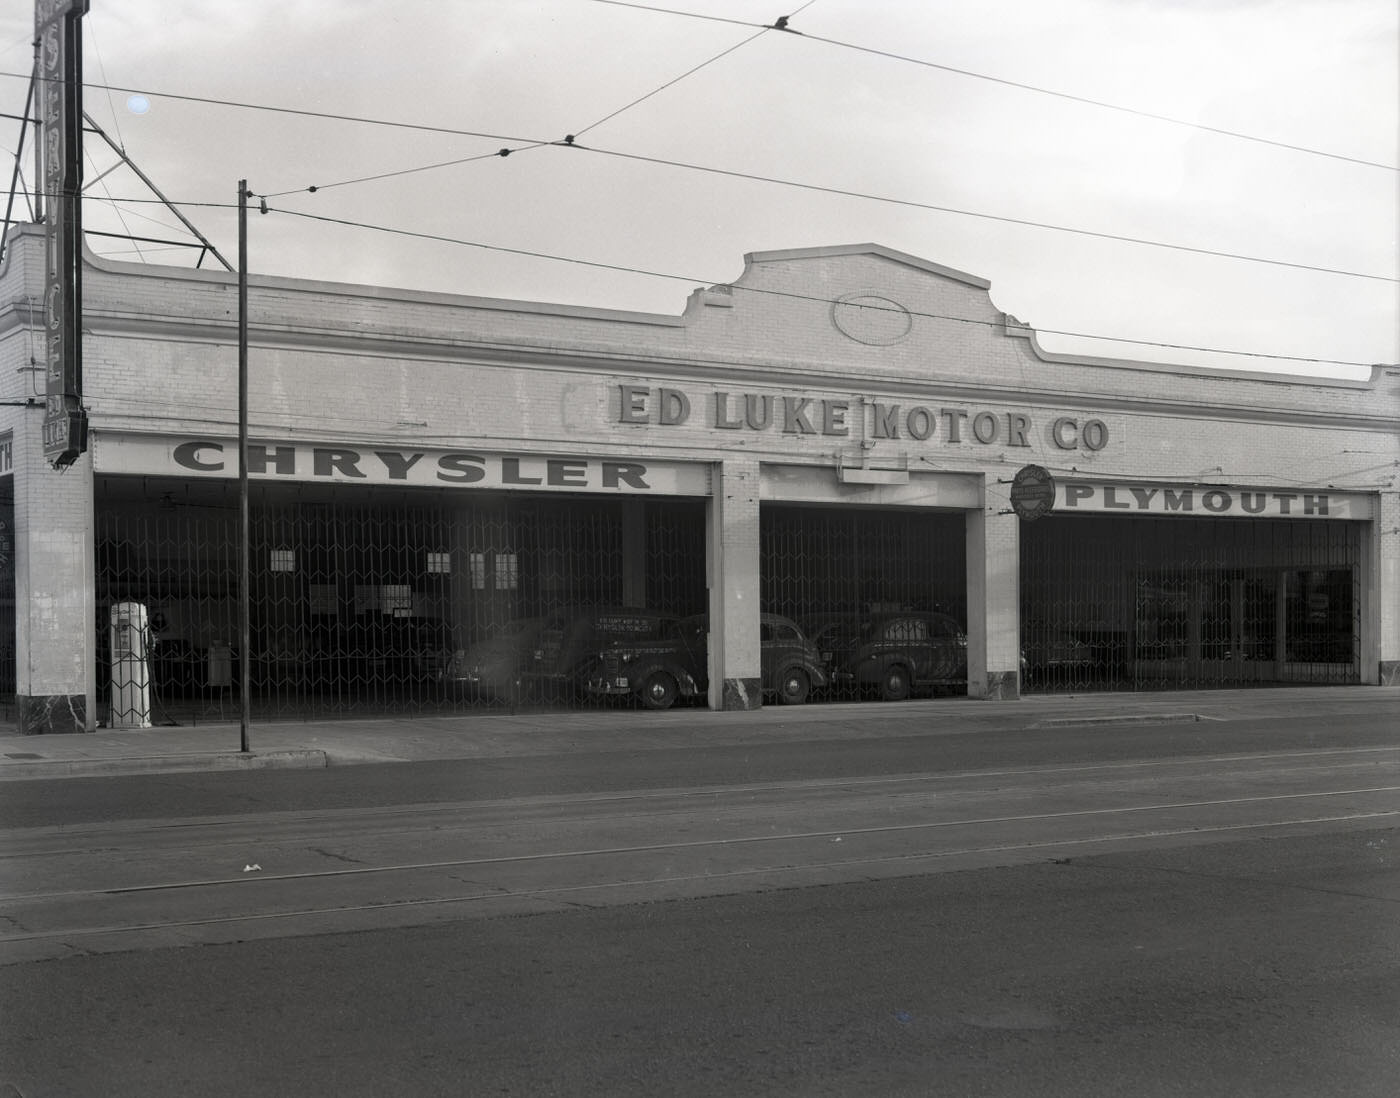 Ed Luke Motor Co. Building Exterior, 1945